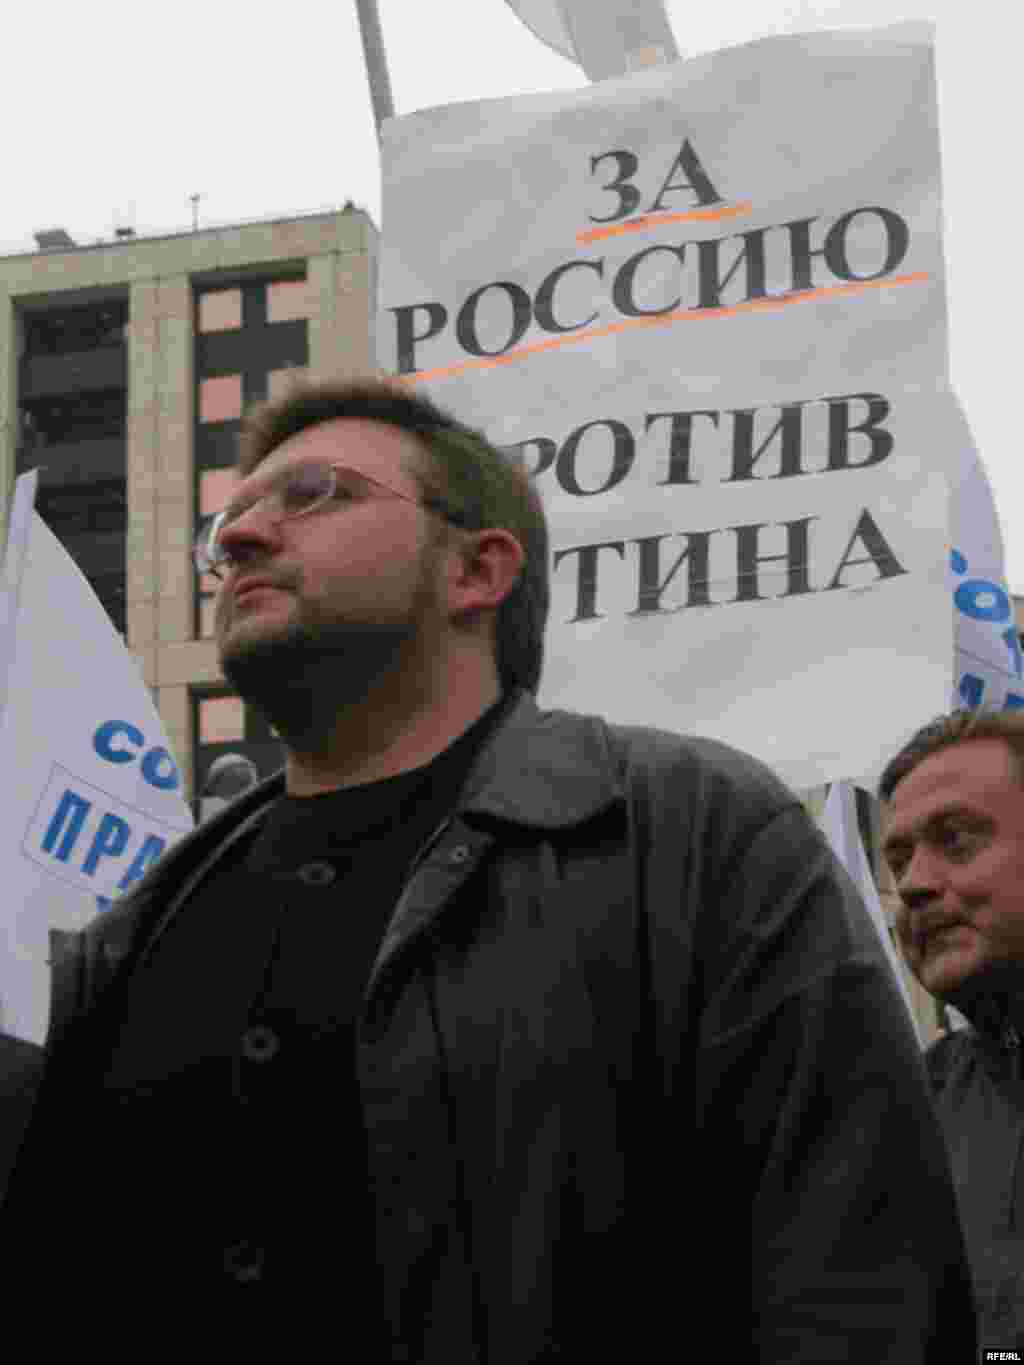 Марш несогласных, Москва. Никита Белых во главе колонны СПС, направляющейся к месту митинга.